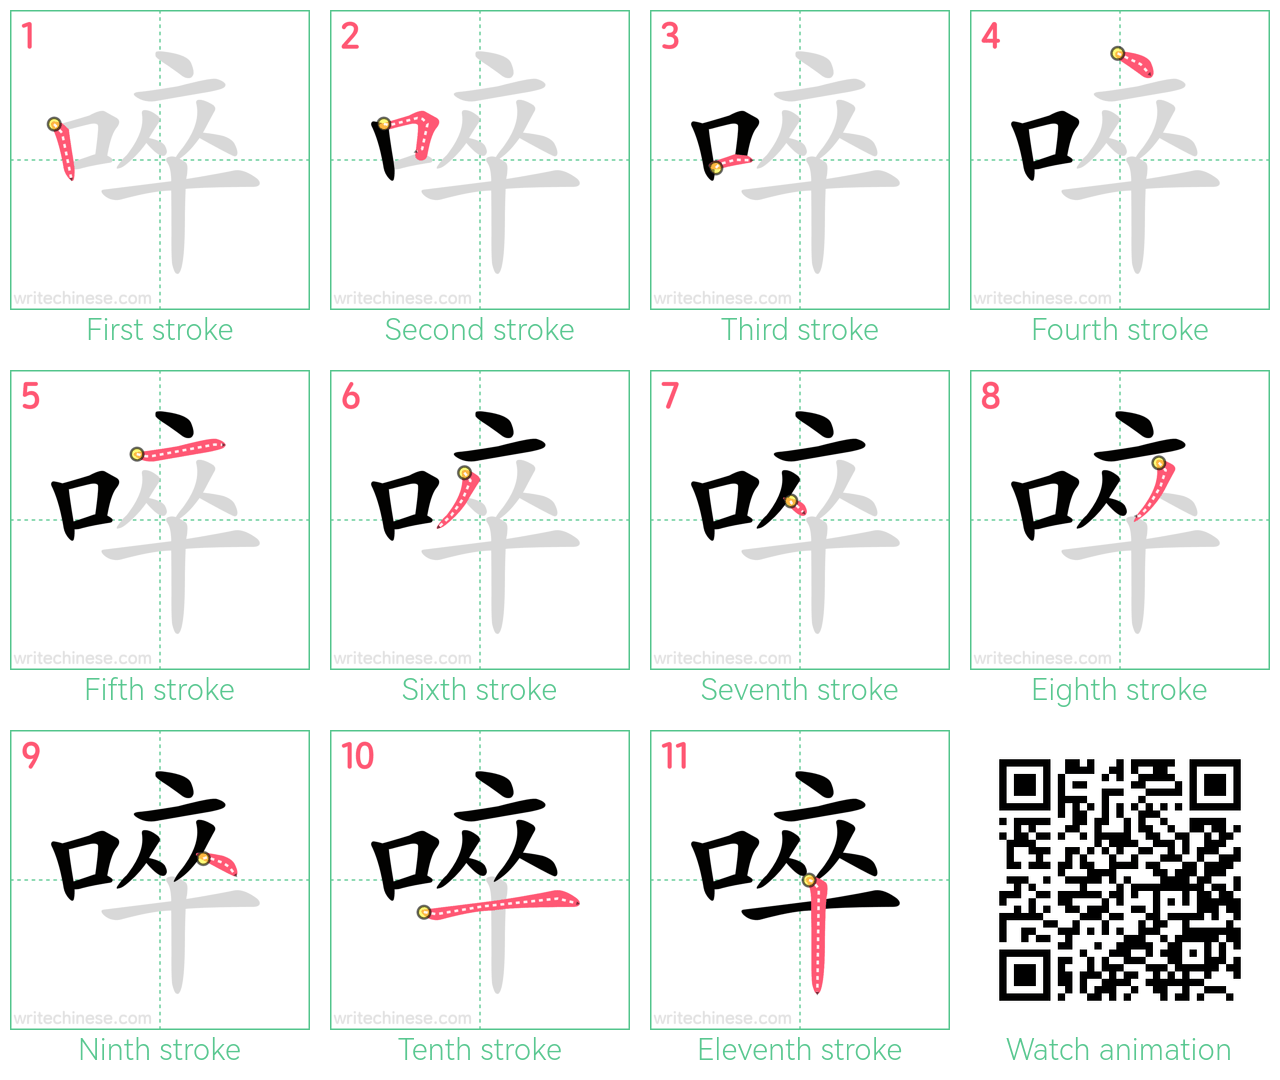 啐 step-by-step stroke order diagrams